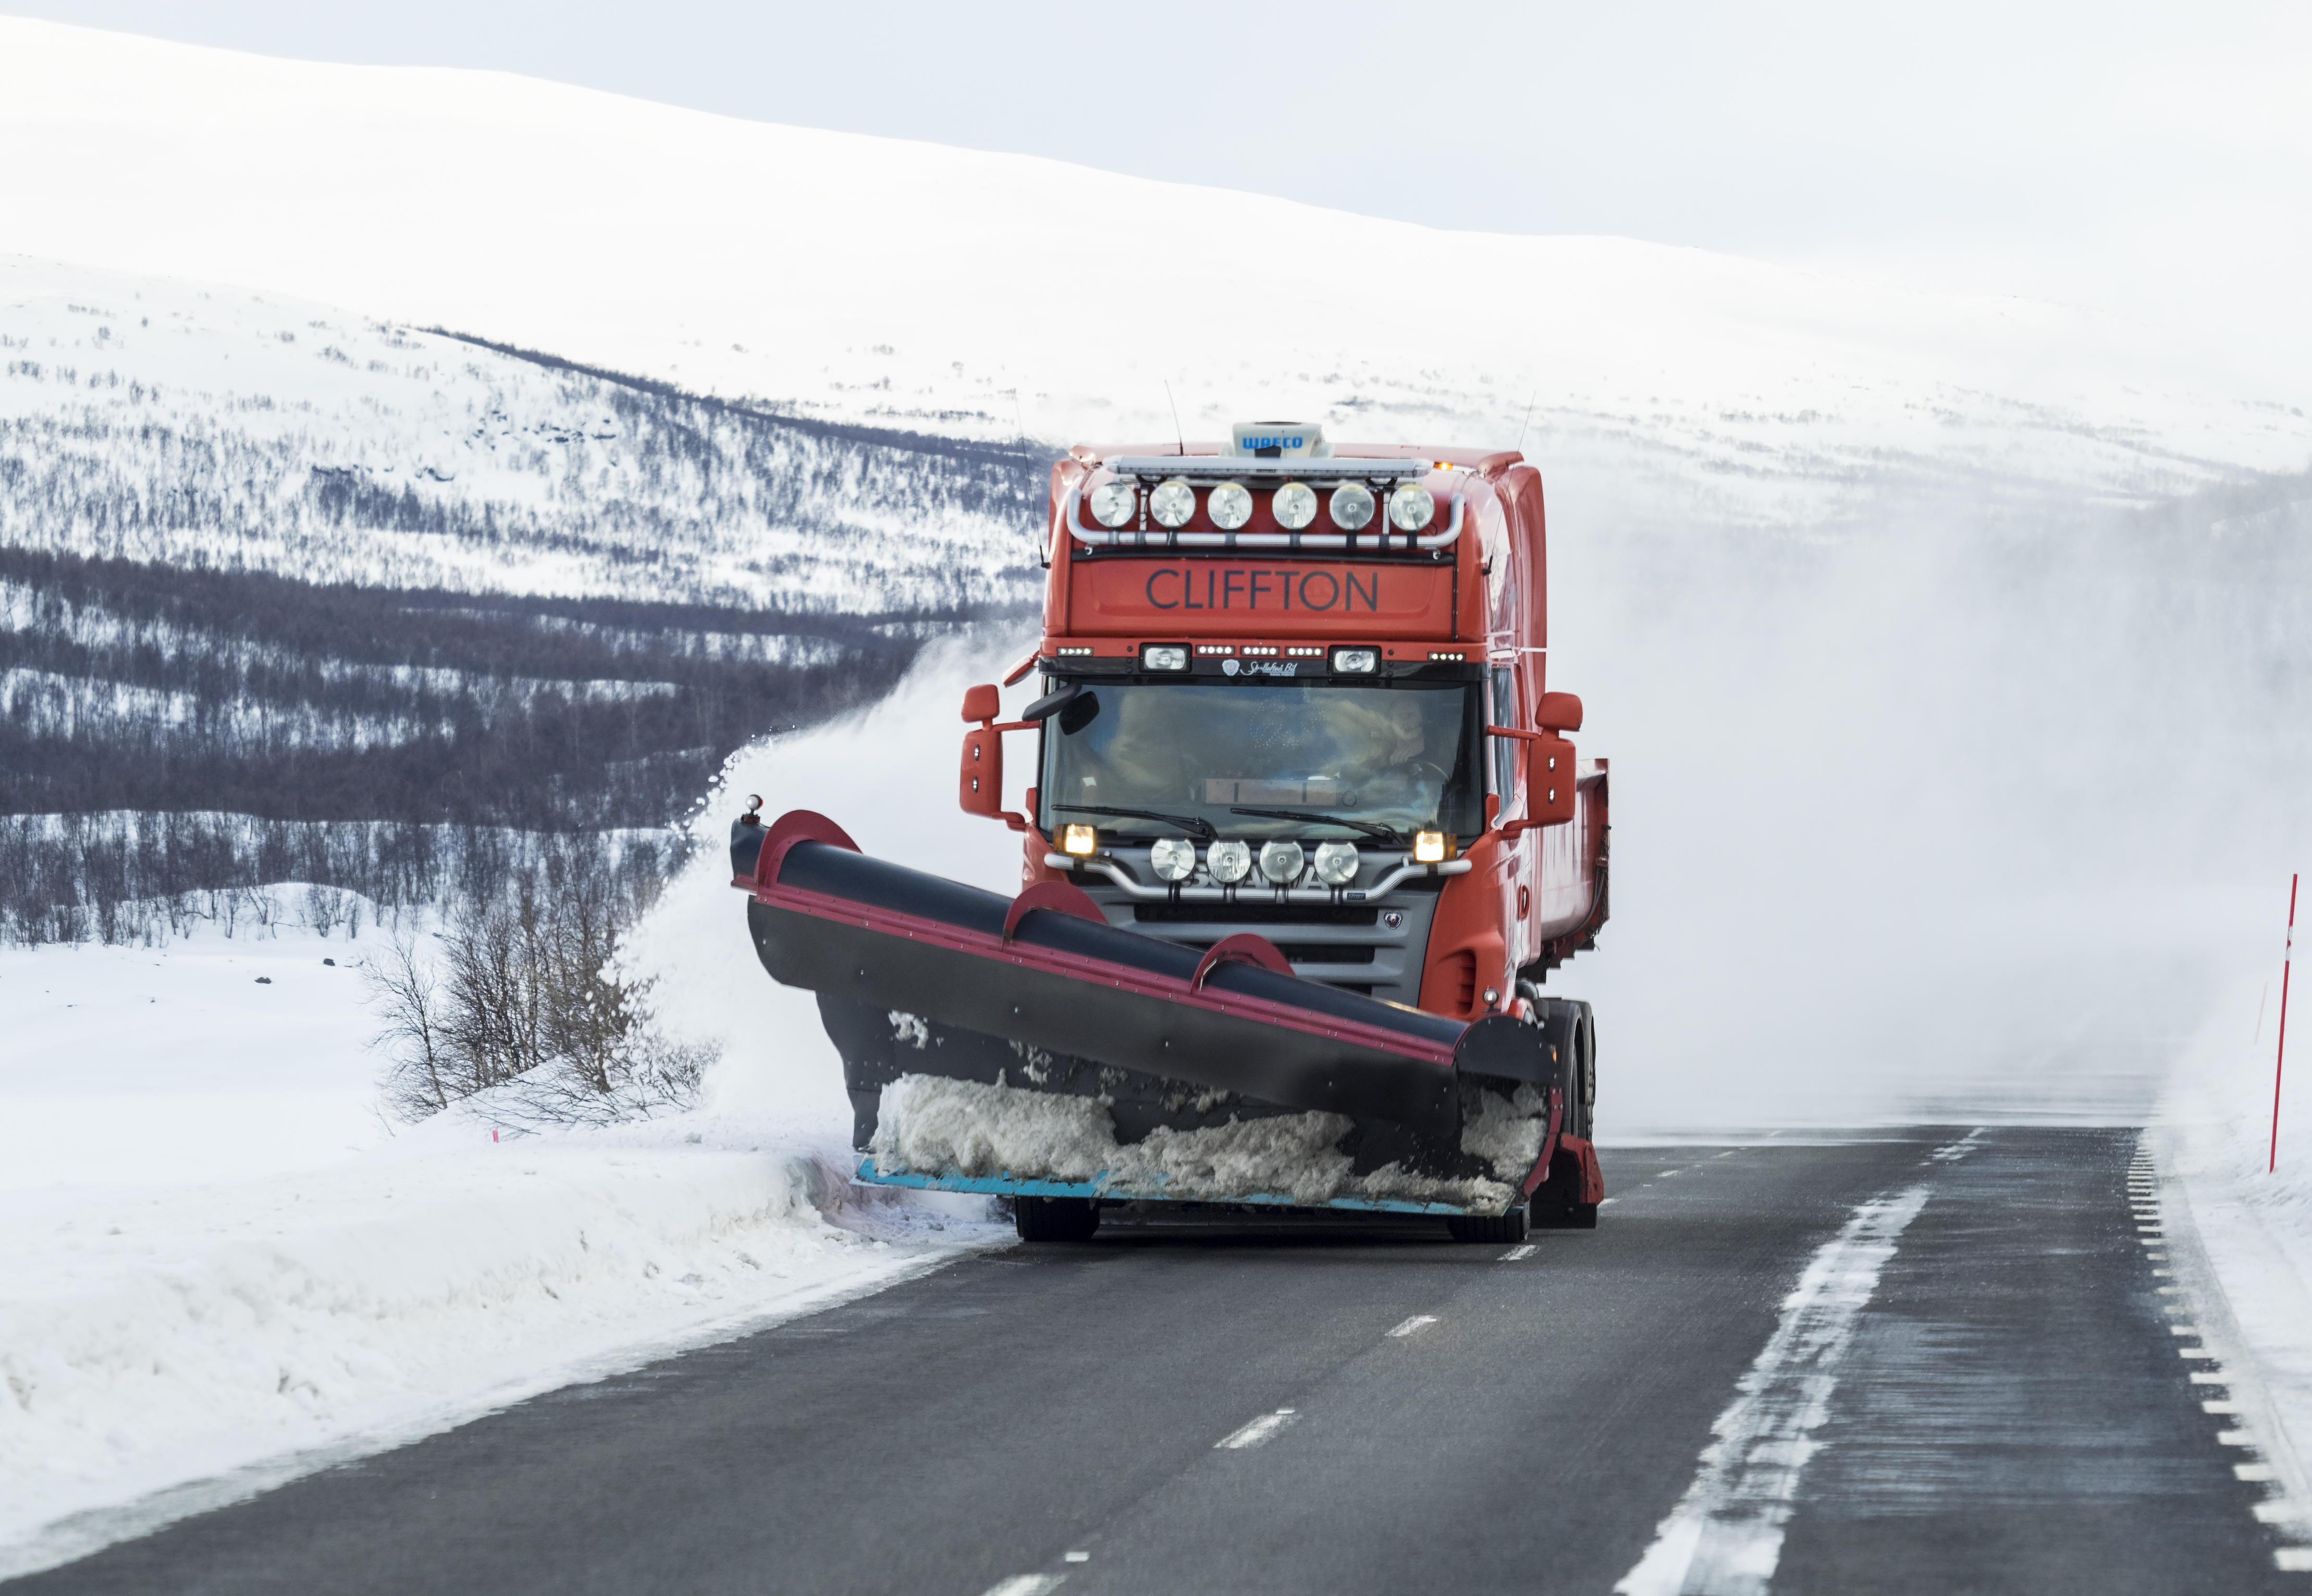 Bild på en plogbil som kör framåt på en asfaltsväg. I bakgrunden syns ett snötäckt berg och på sidan av vägen ligger ett metertjockt lager av snö.